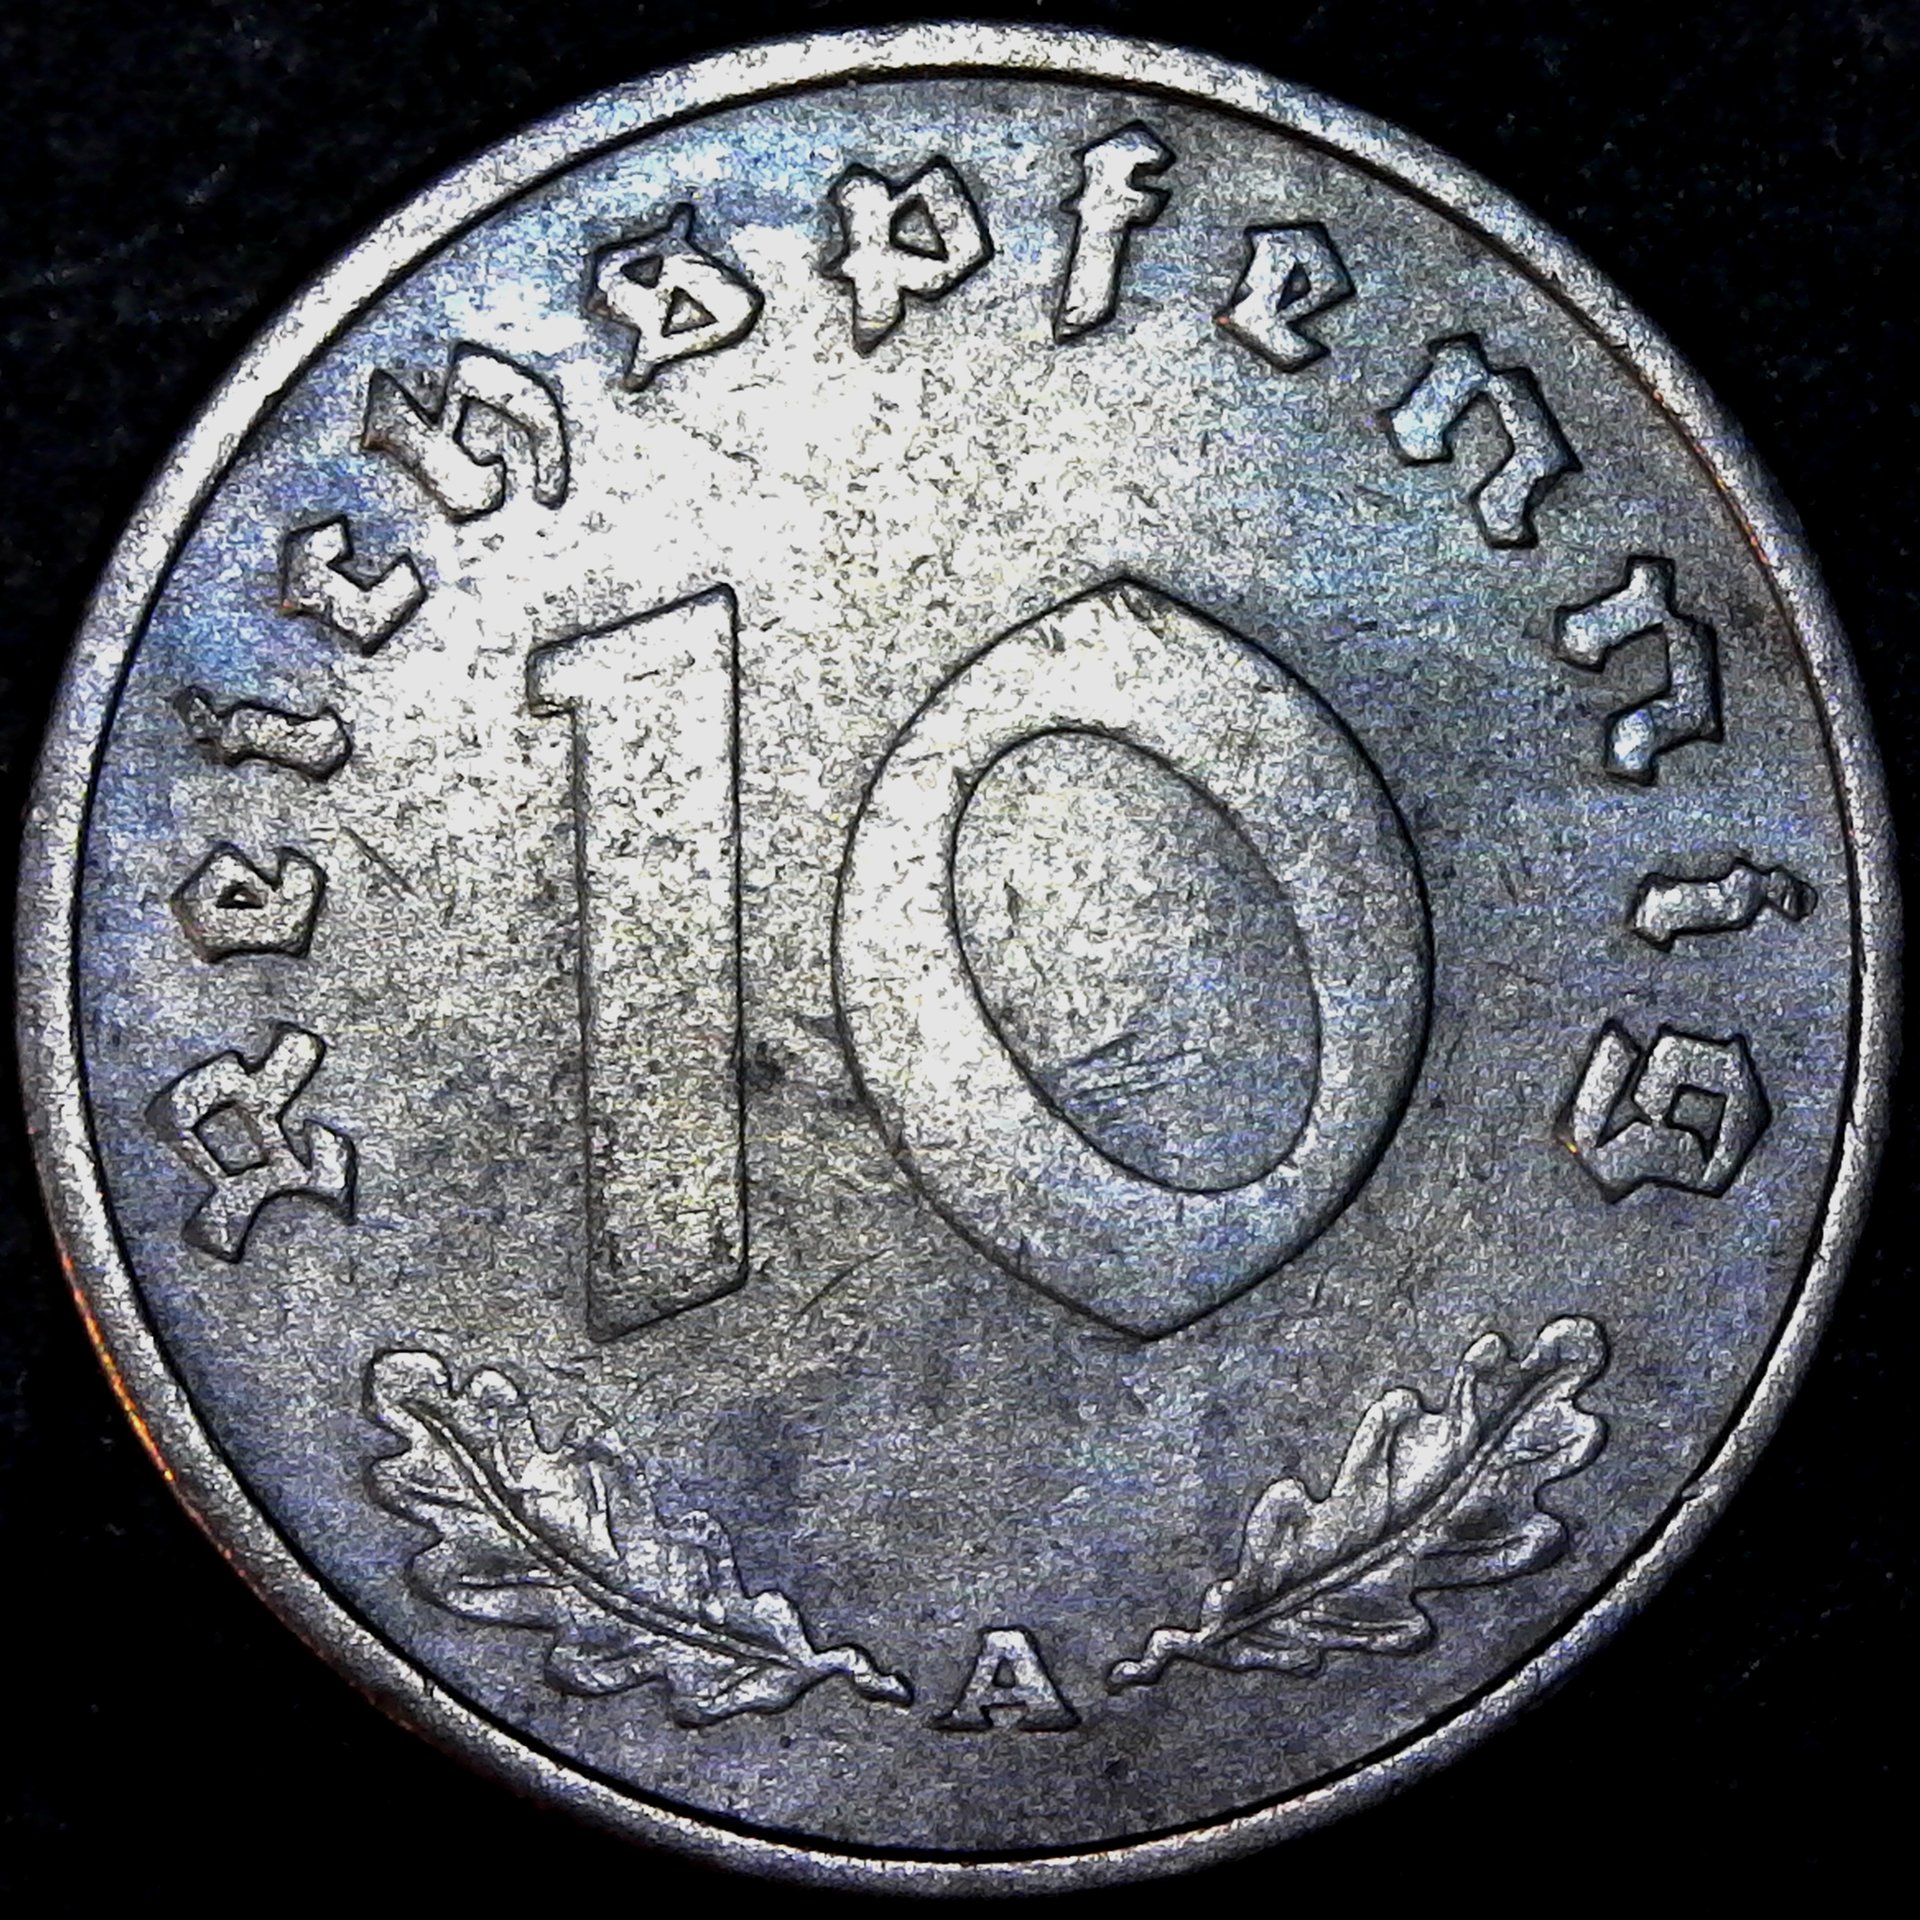 Germany 10 reichspfennig 1941 reverse.jpg